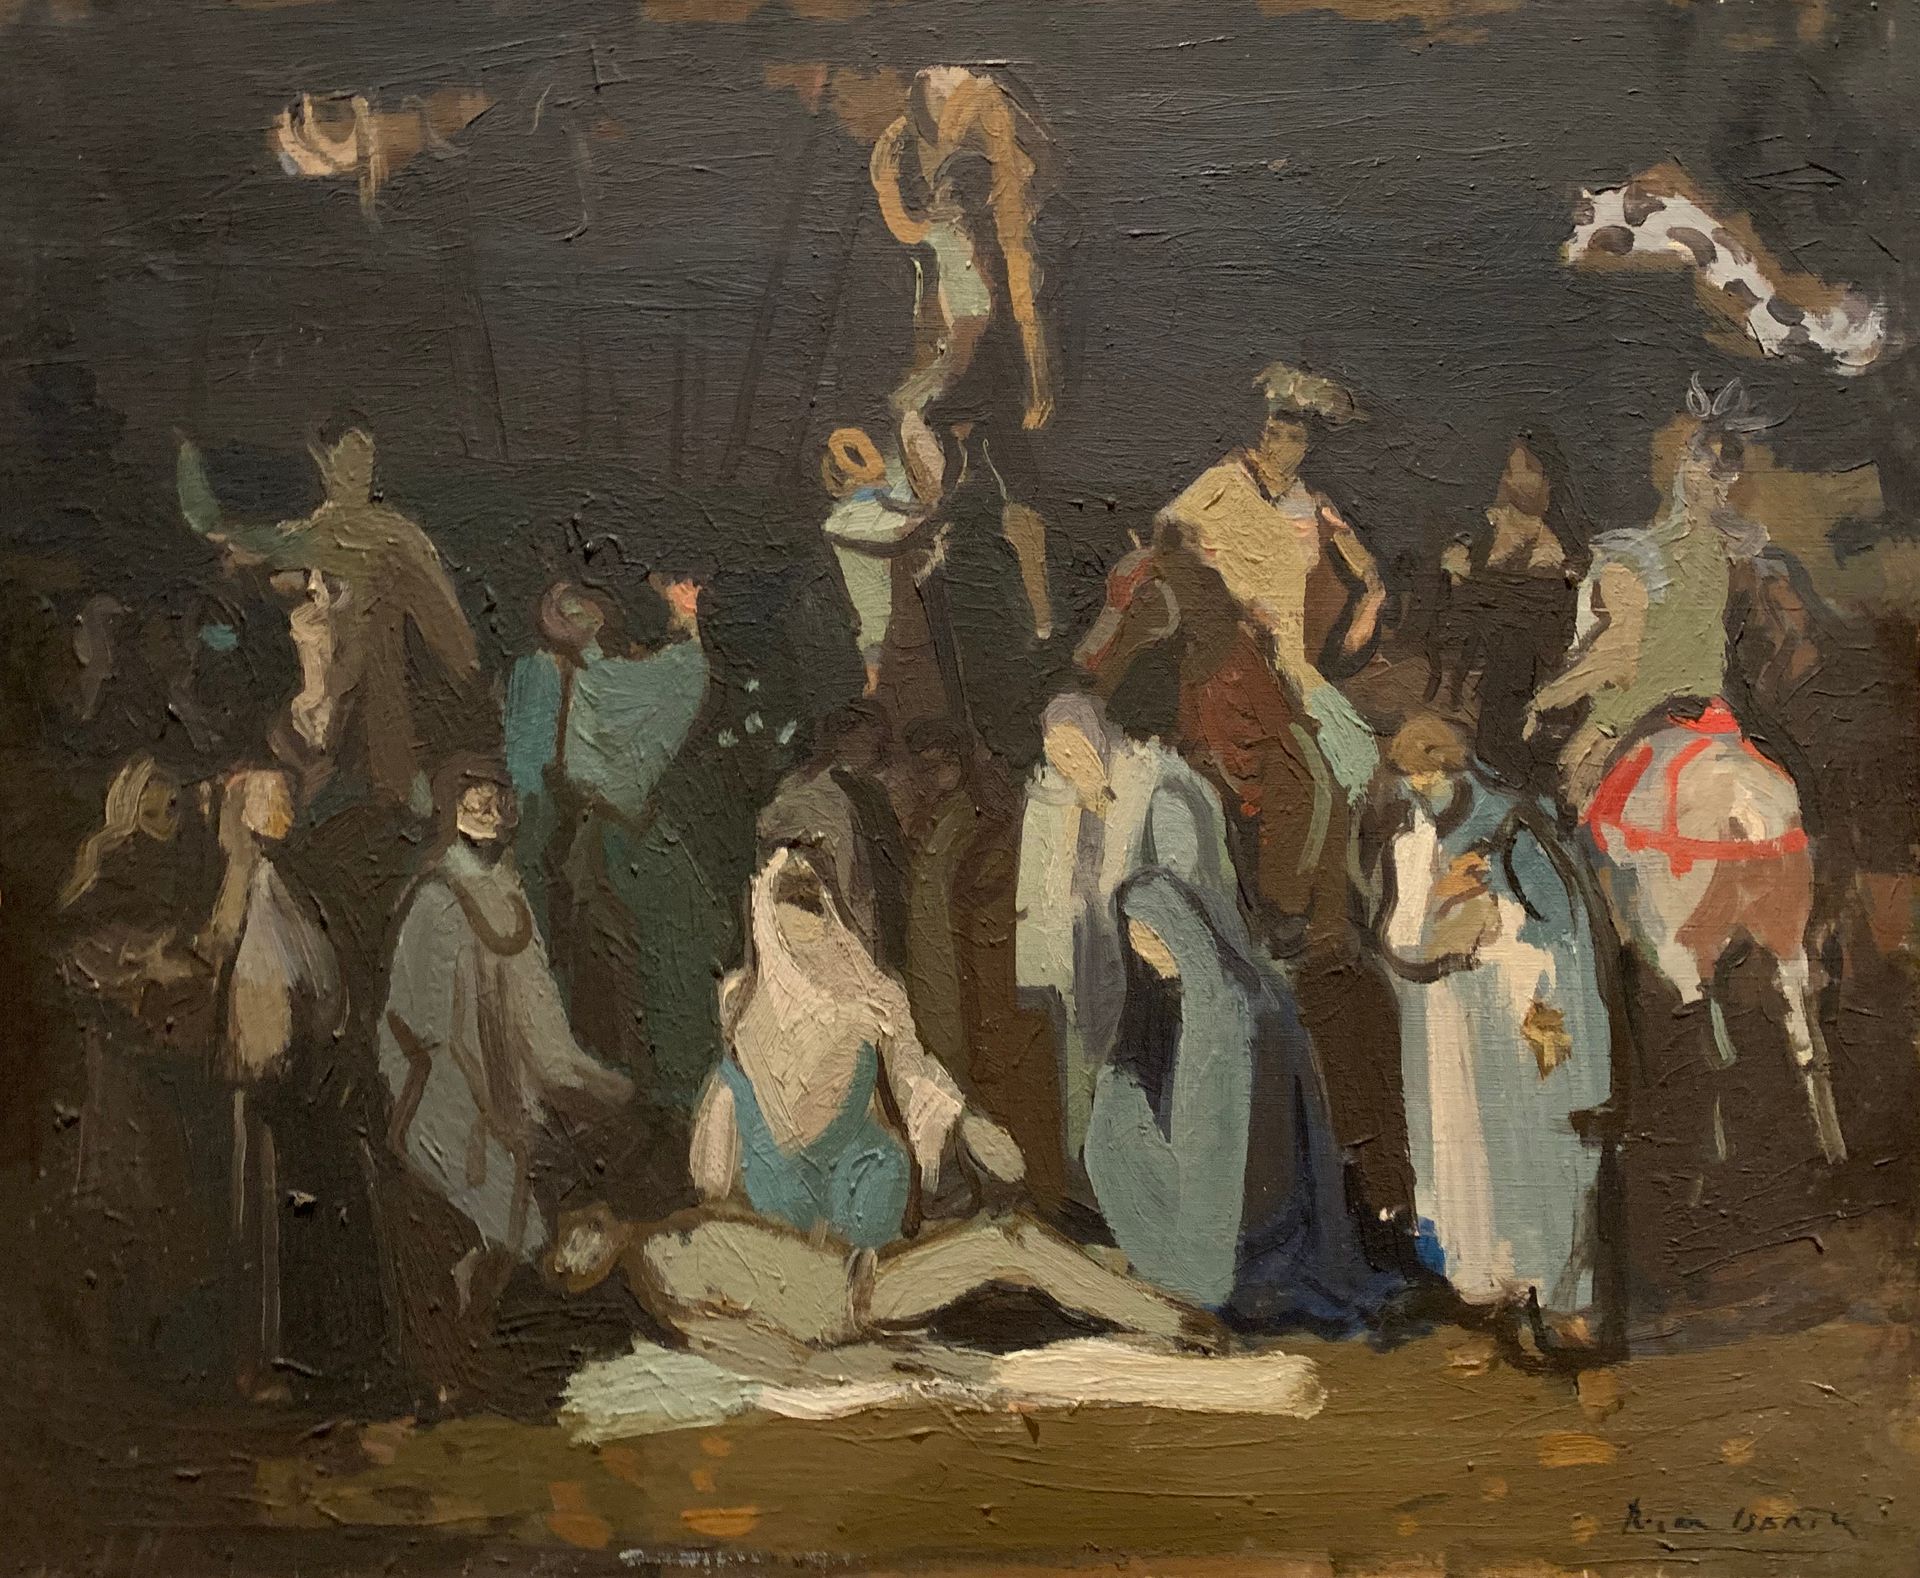 Null 罗杰-贝尔廷(1915-2003)

剥离

布面油画，右下角有签名

54 x 65厘米。